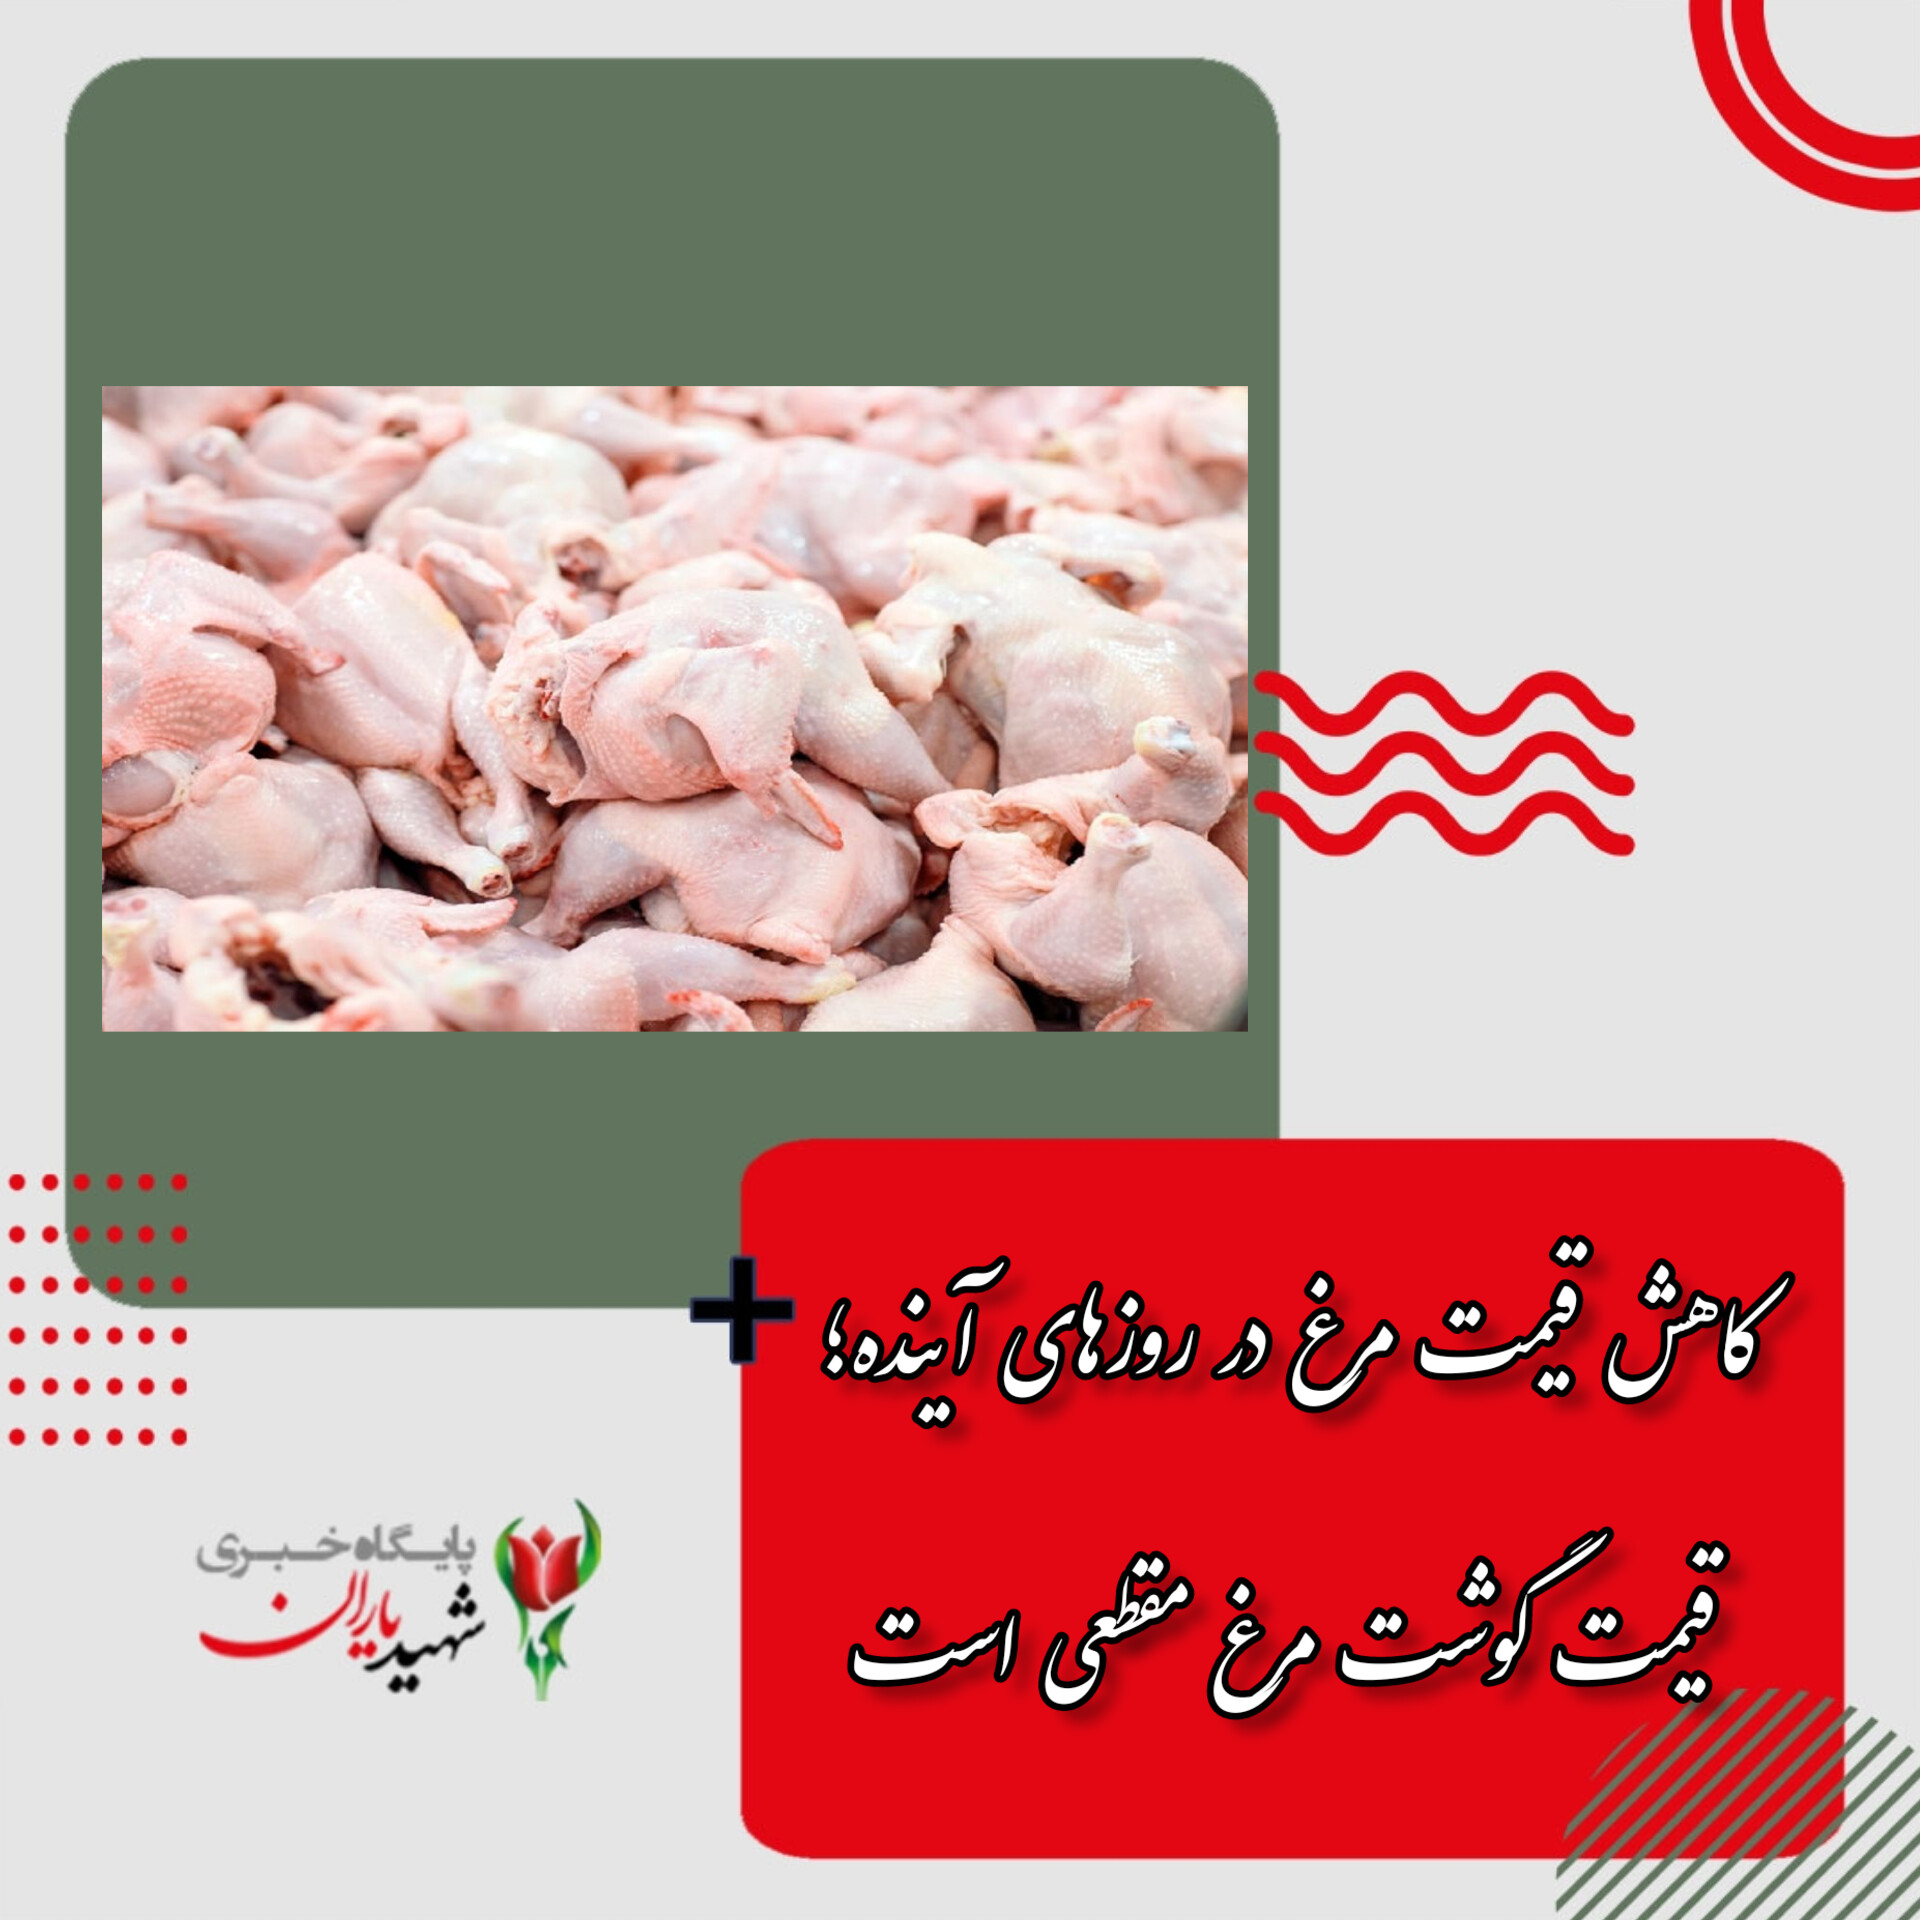 کاهش قیمت در روزهای آینده؛ افزایش قیمت گوشت مرغ مقطعی است